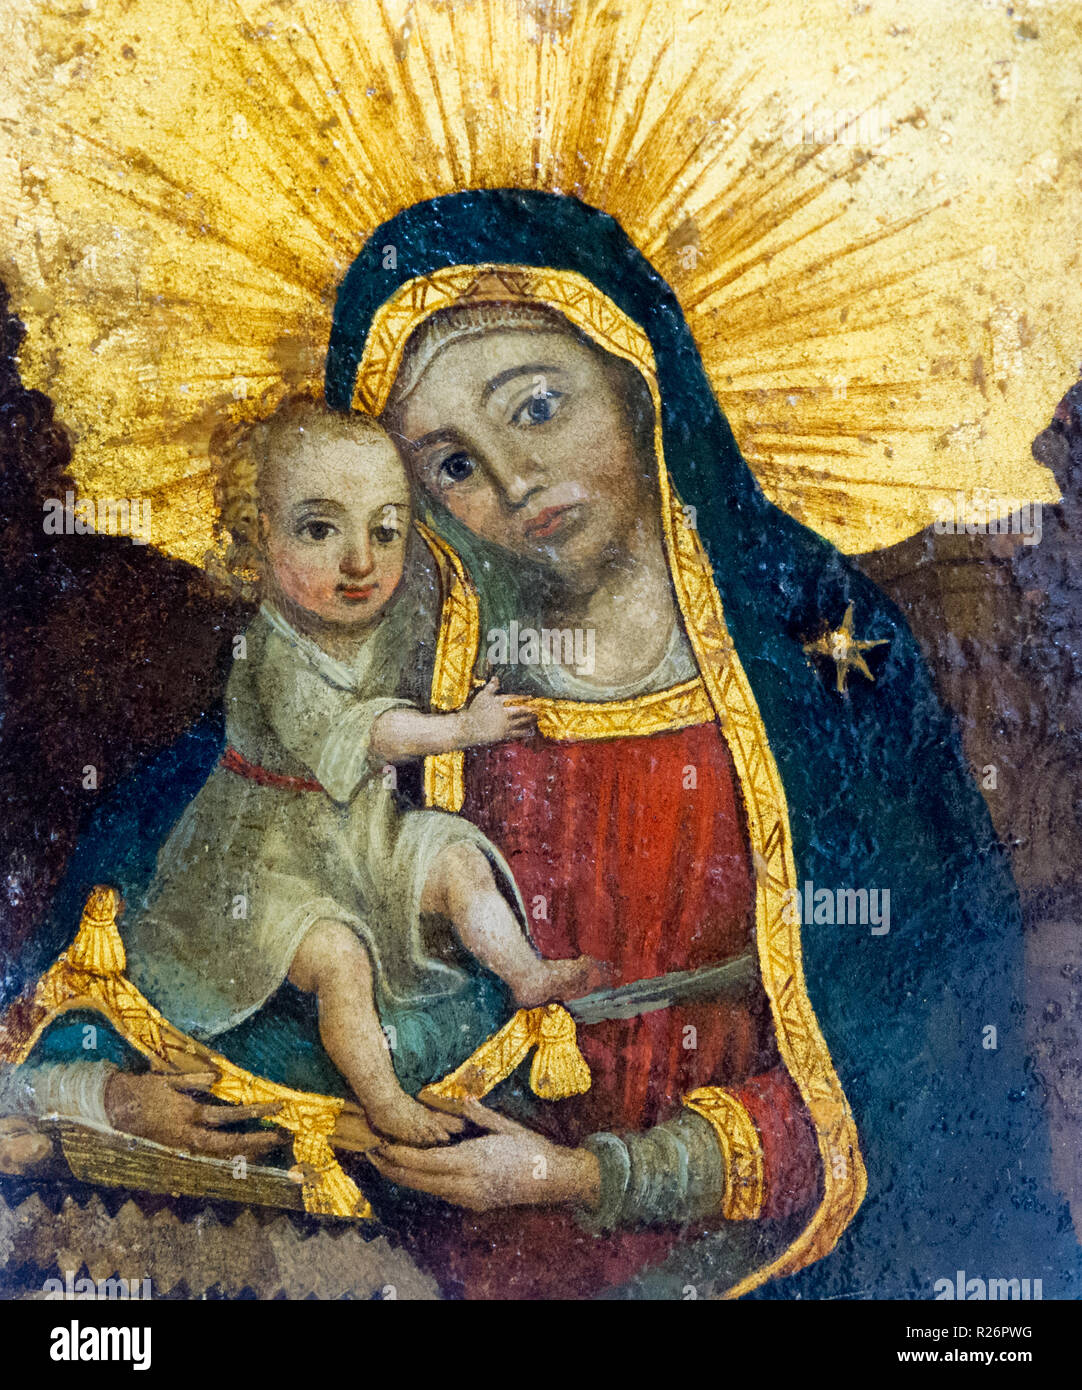 Bardejov, Slowakei. 2018/8/9. Eine Ikone der Jungfrau Maria mit dem Jesuskind. Aus einer byzantinischen Kirche. Derzeit in einem Museum in Bradejov. Stockfoto